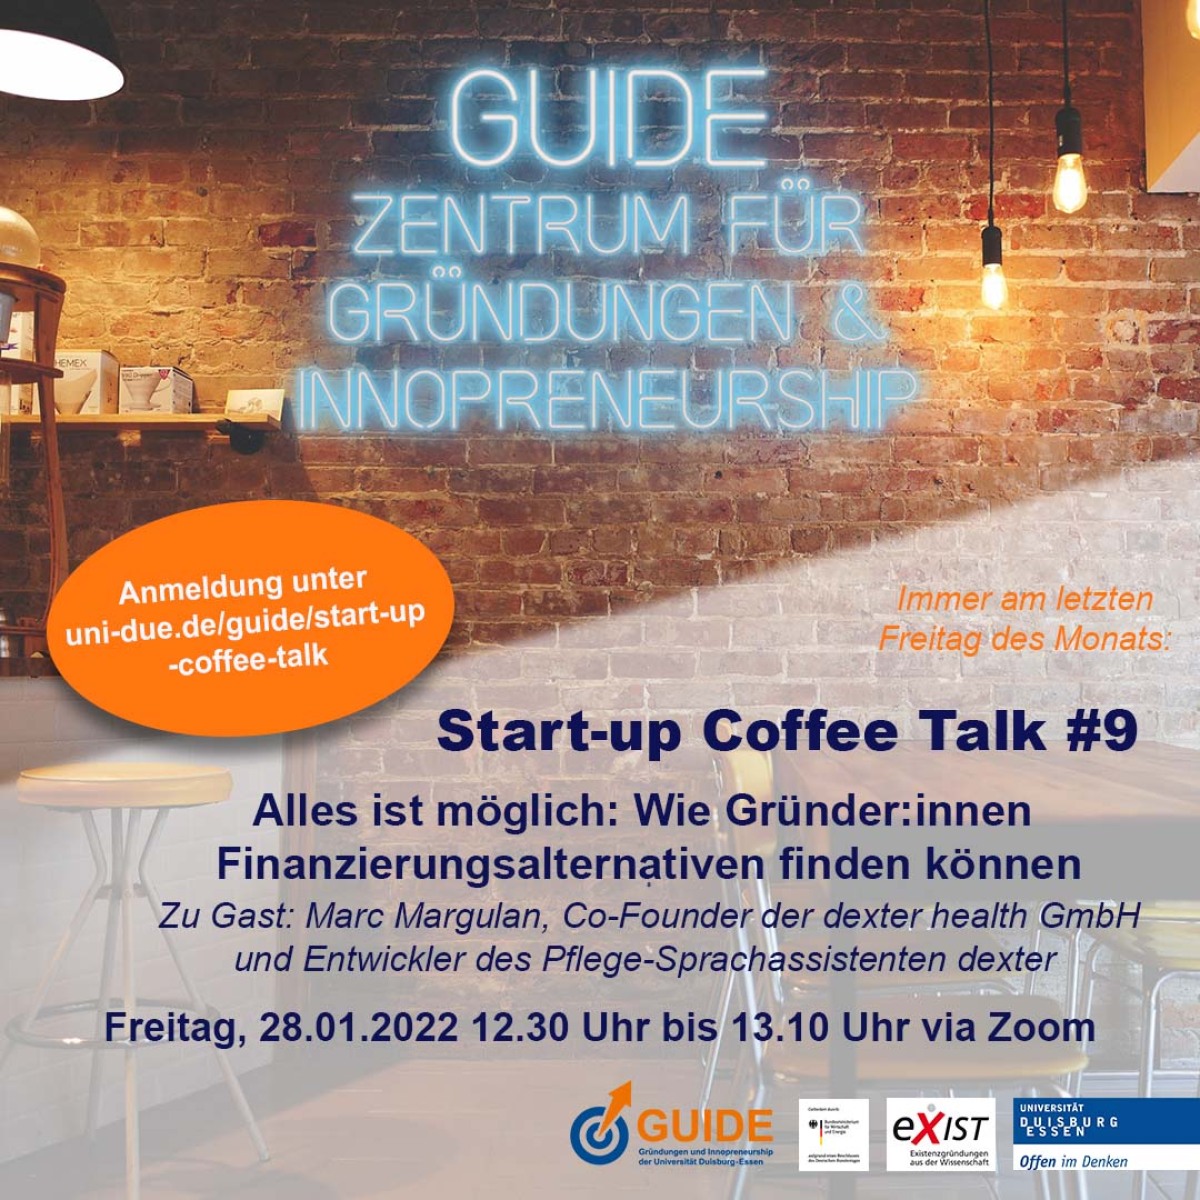 Start-up Coffee Talk #9